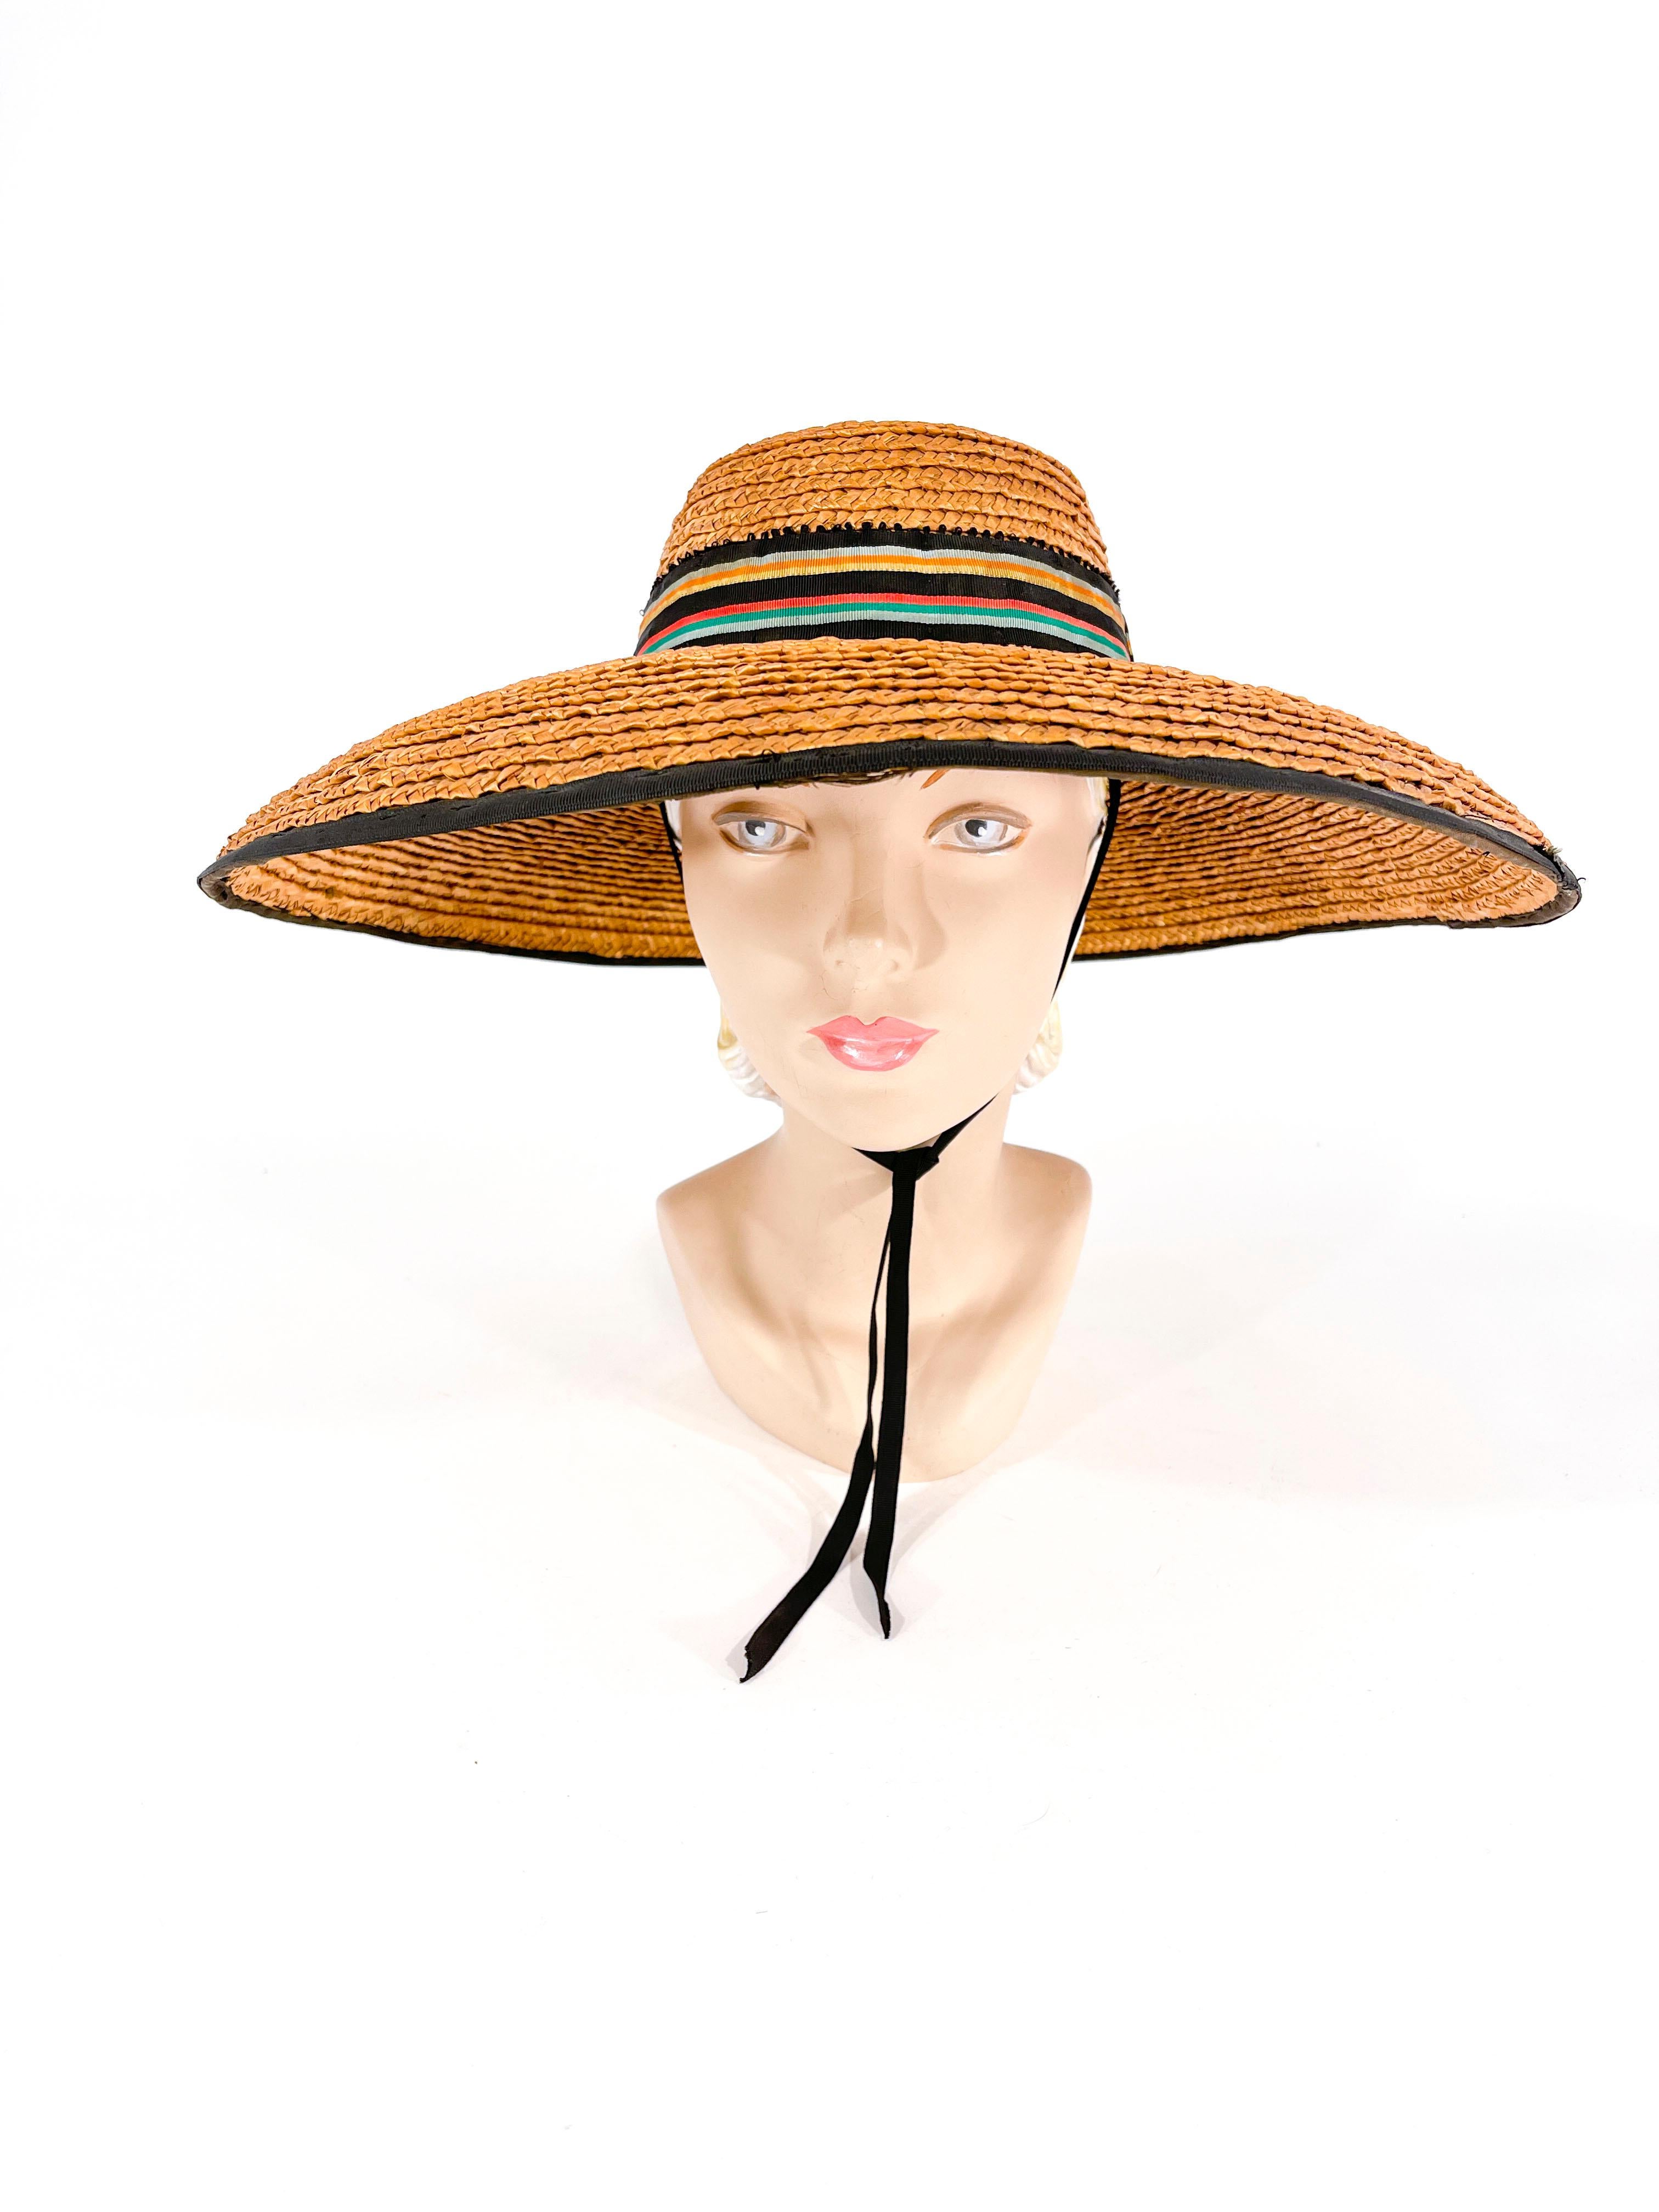 1930er Jahre Geflochtener, breitkrempiger Sonnen-/Bilderhut aus Stroh, verziert mit einem marine- und regenbogenfarbenen, gestreiften Hutband mit Ziegelstein-Akzenten. Die Krempe ist vollständig mit Ripsband eingefasst, und das Innere der Krone ist